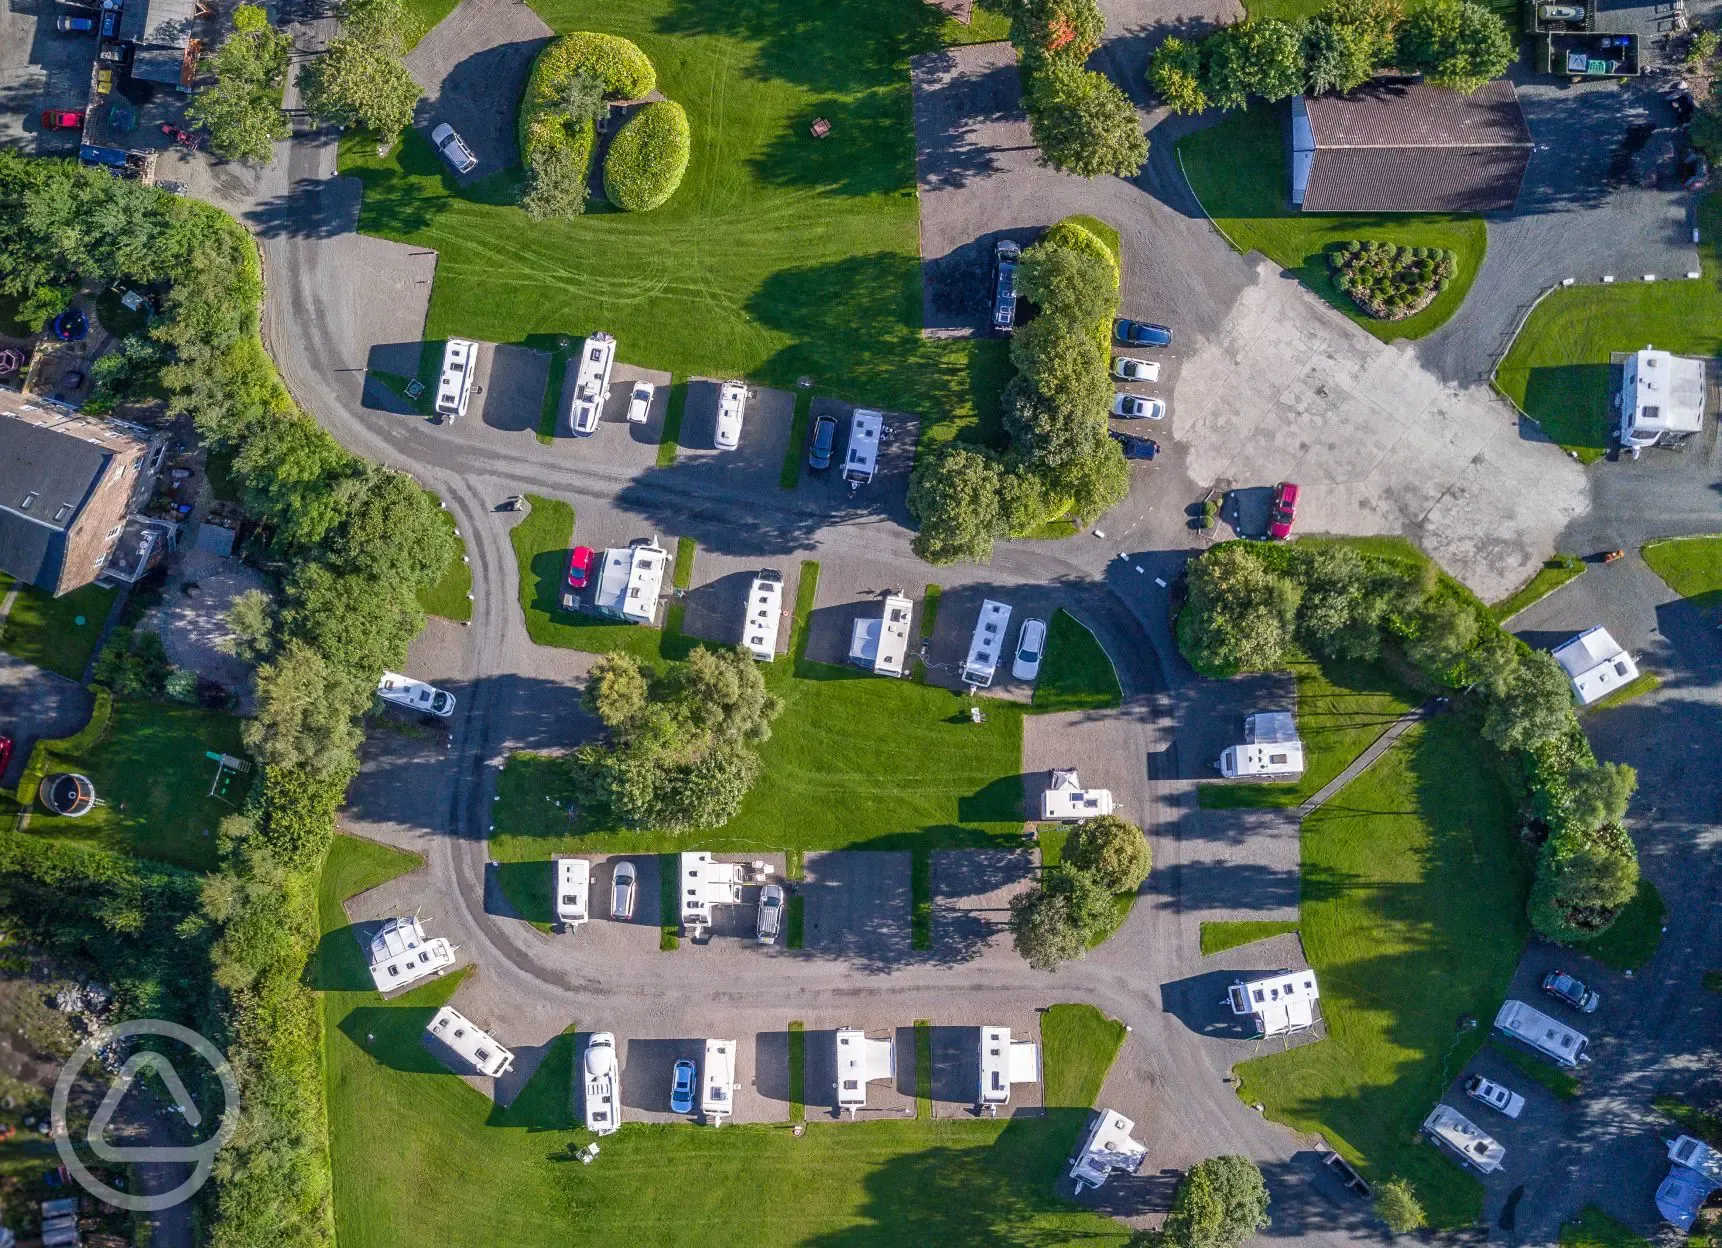 The Woods Caravan Park aerial view